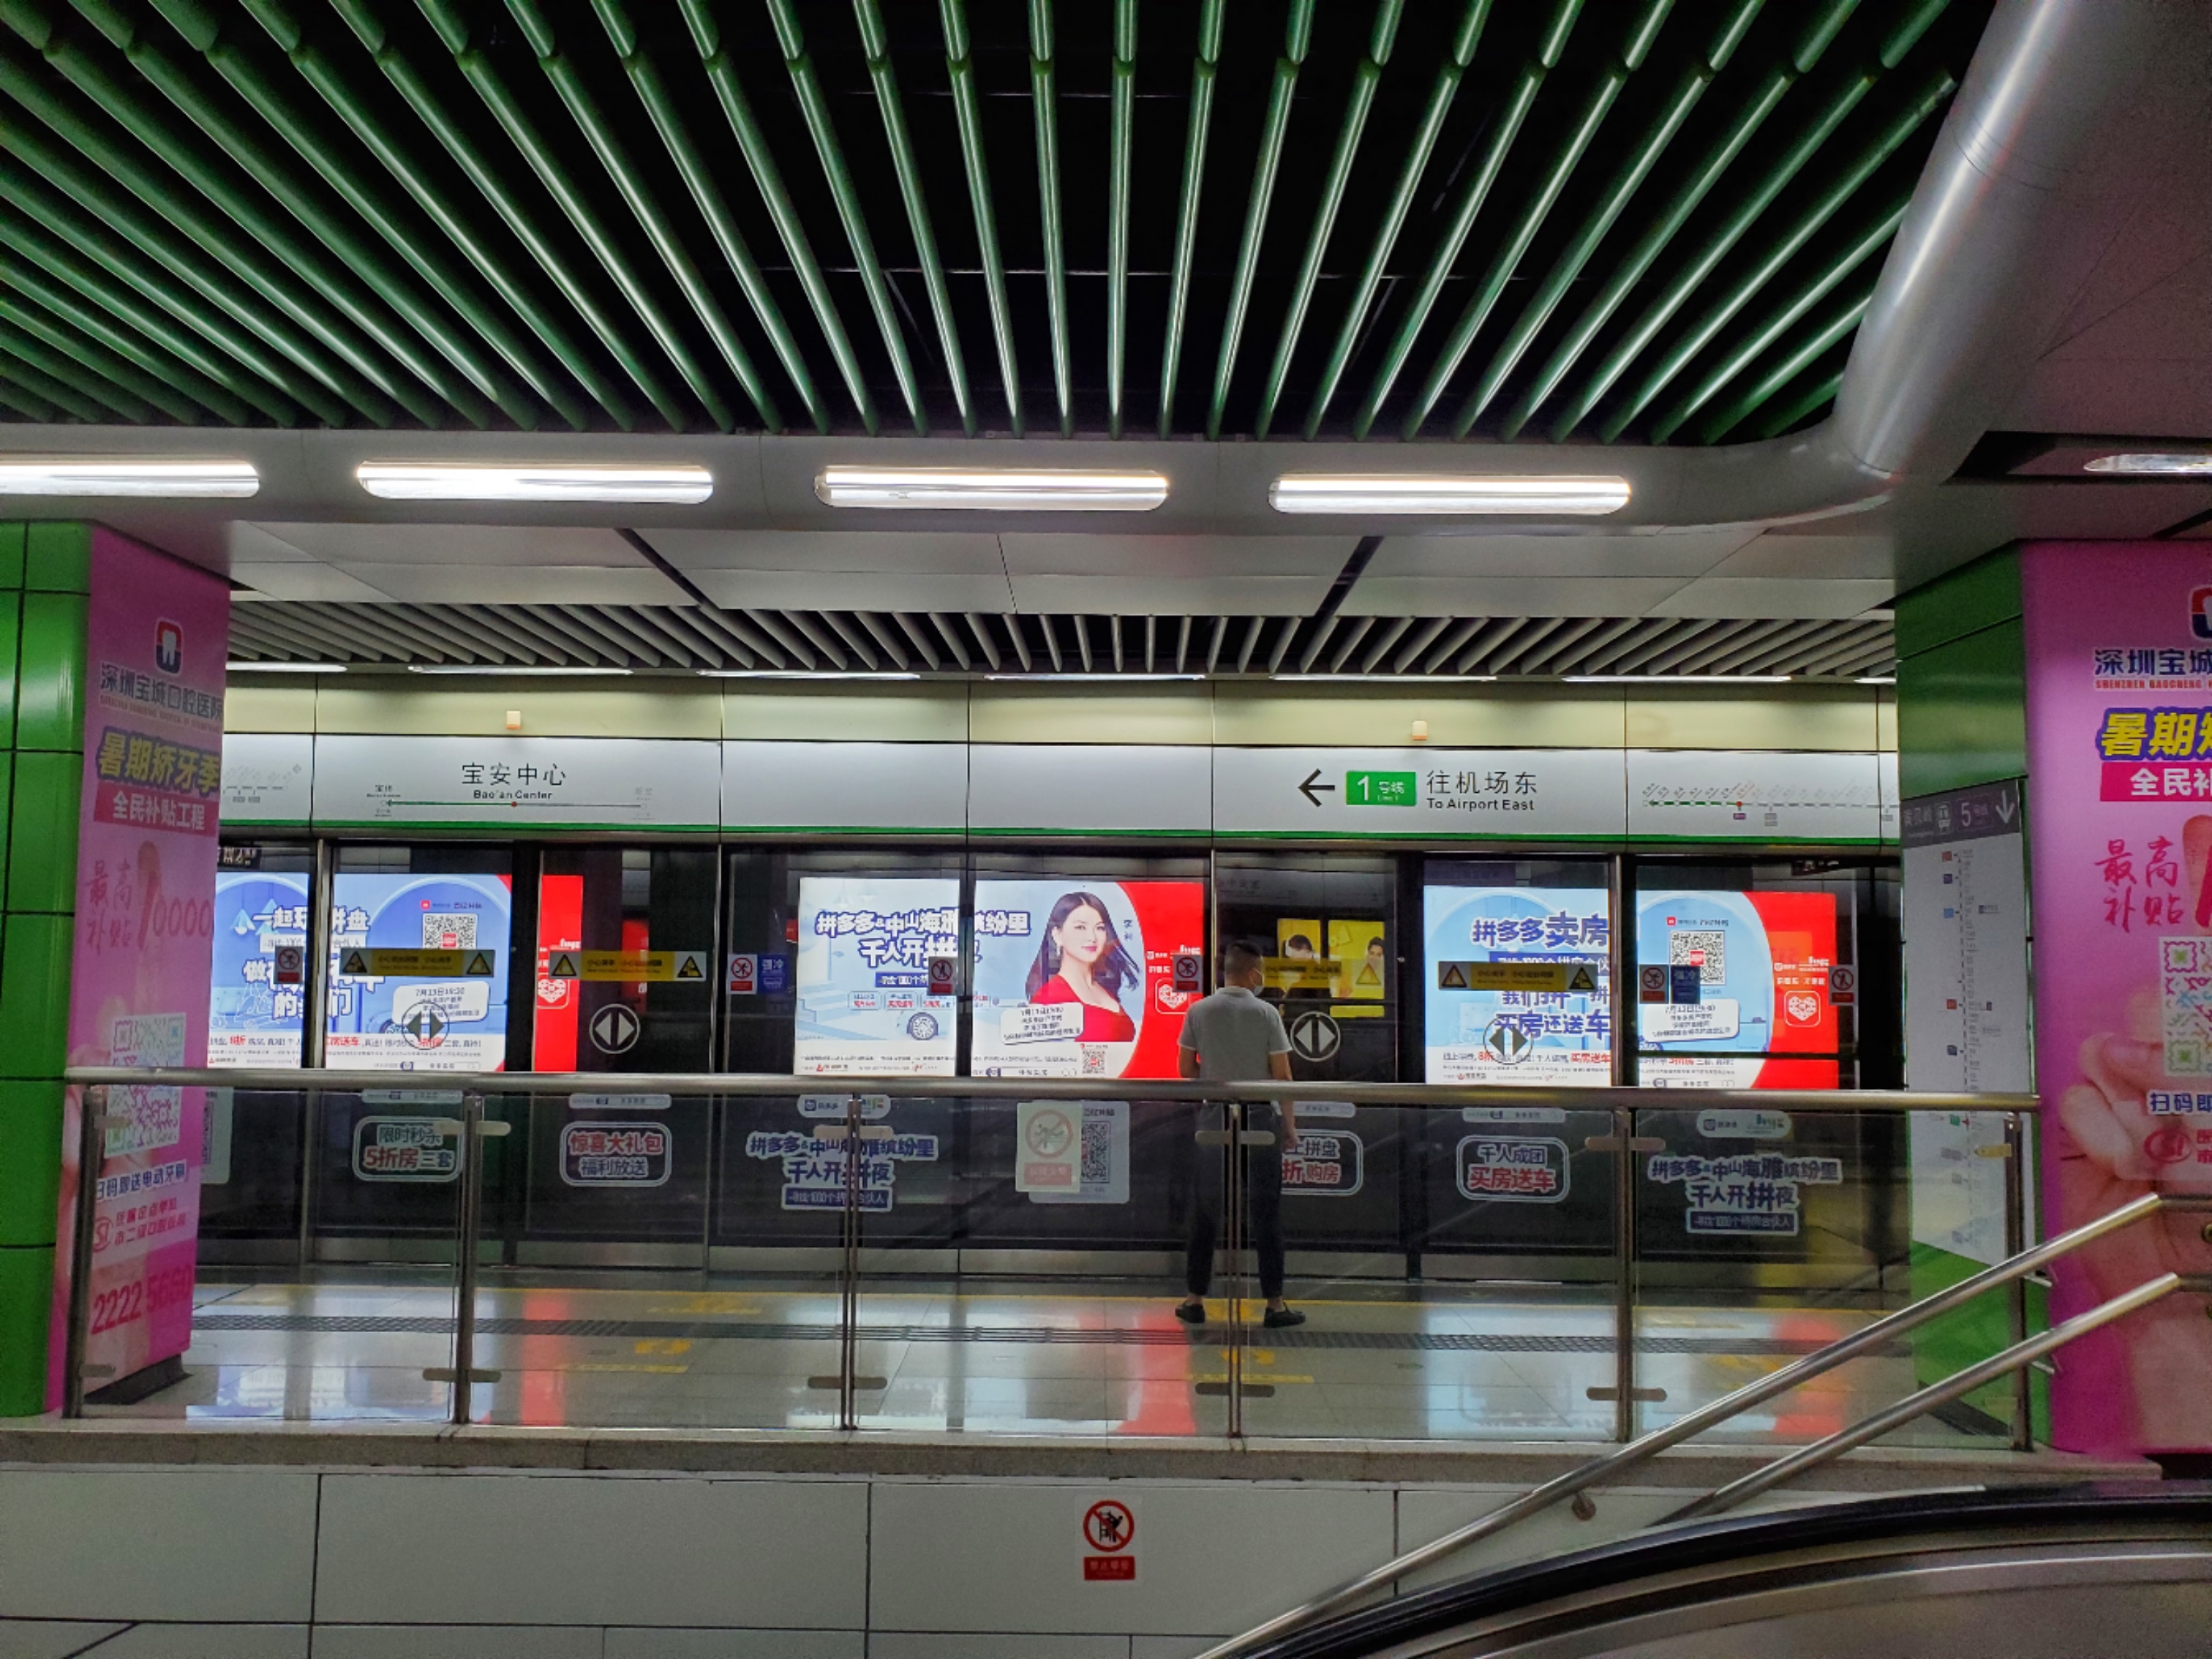 深圳地铁广告公司解读广告创意的设计